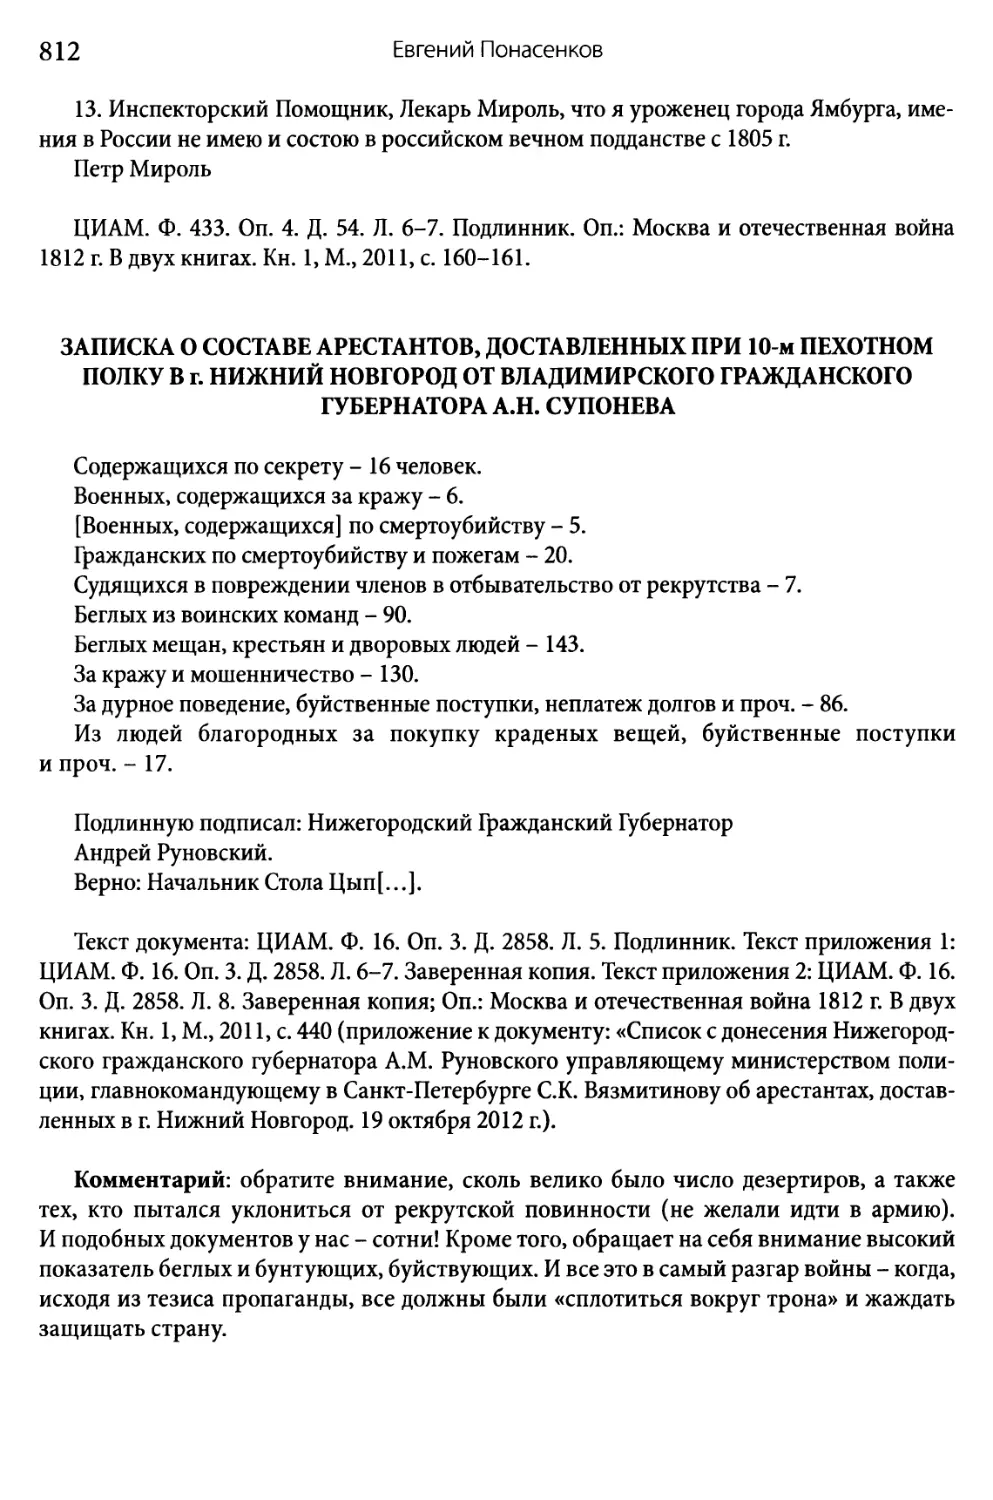 Записка о составе арестантов, доставленных при 10-м пехотном полку в г. Нижний Новгород…